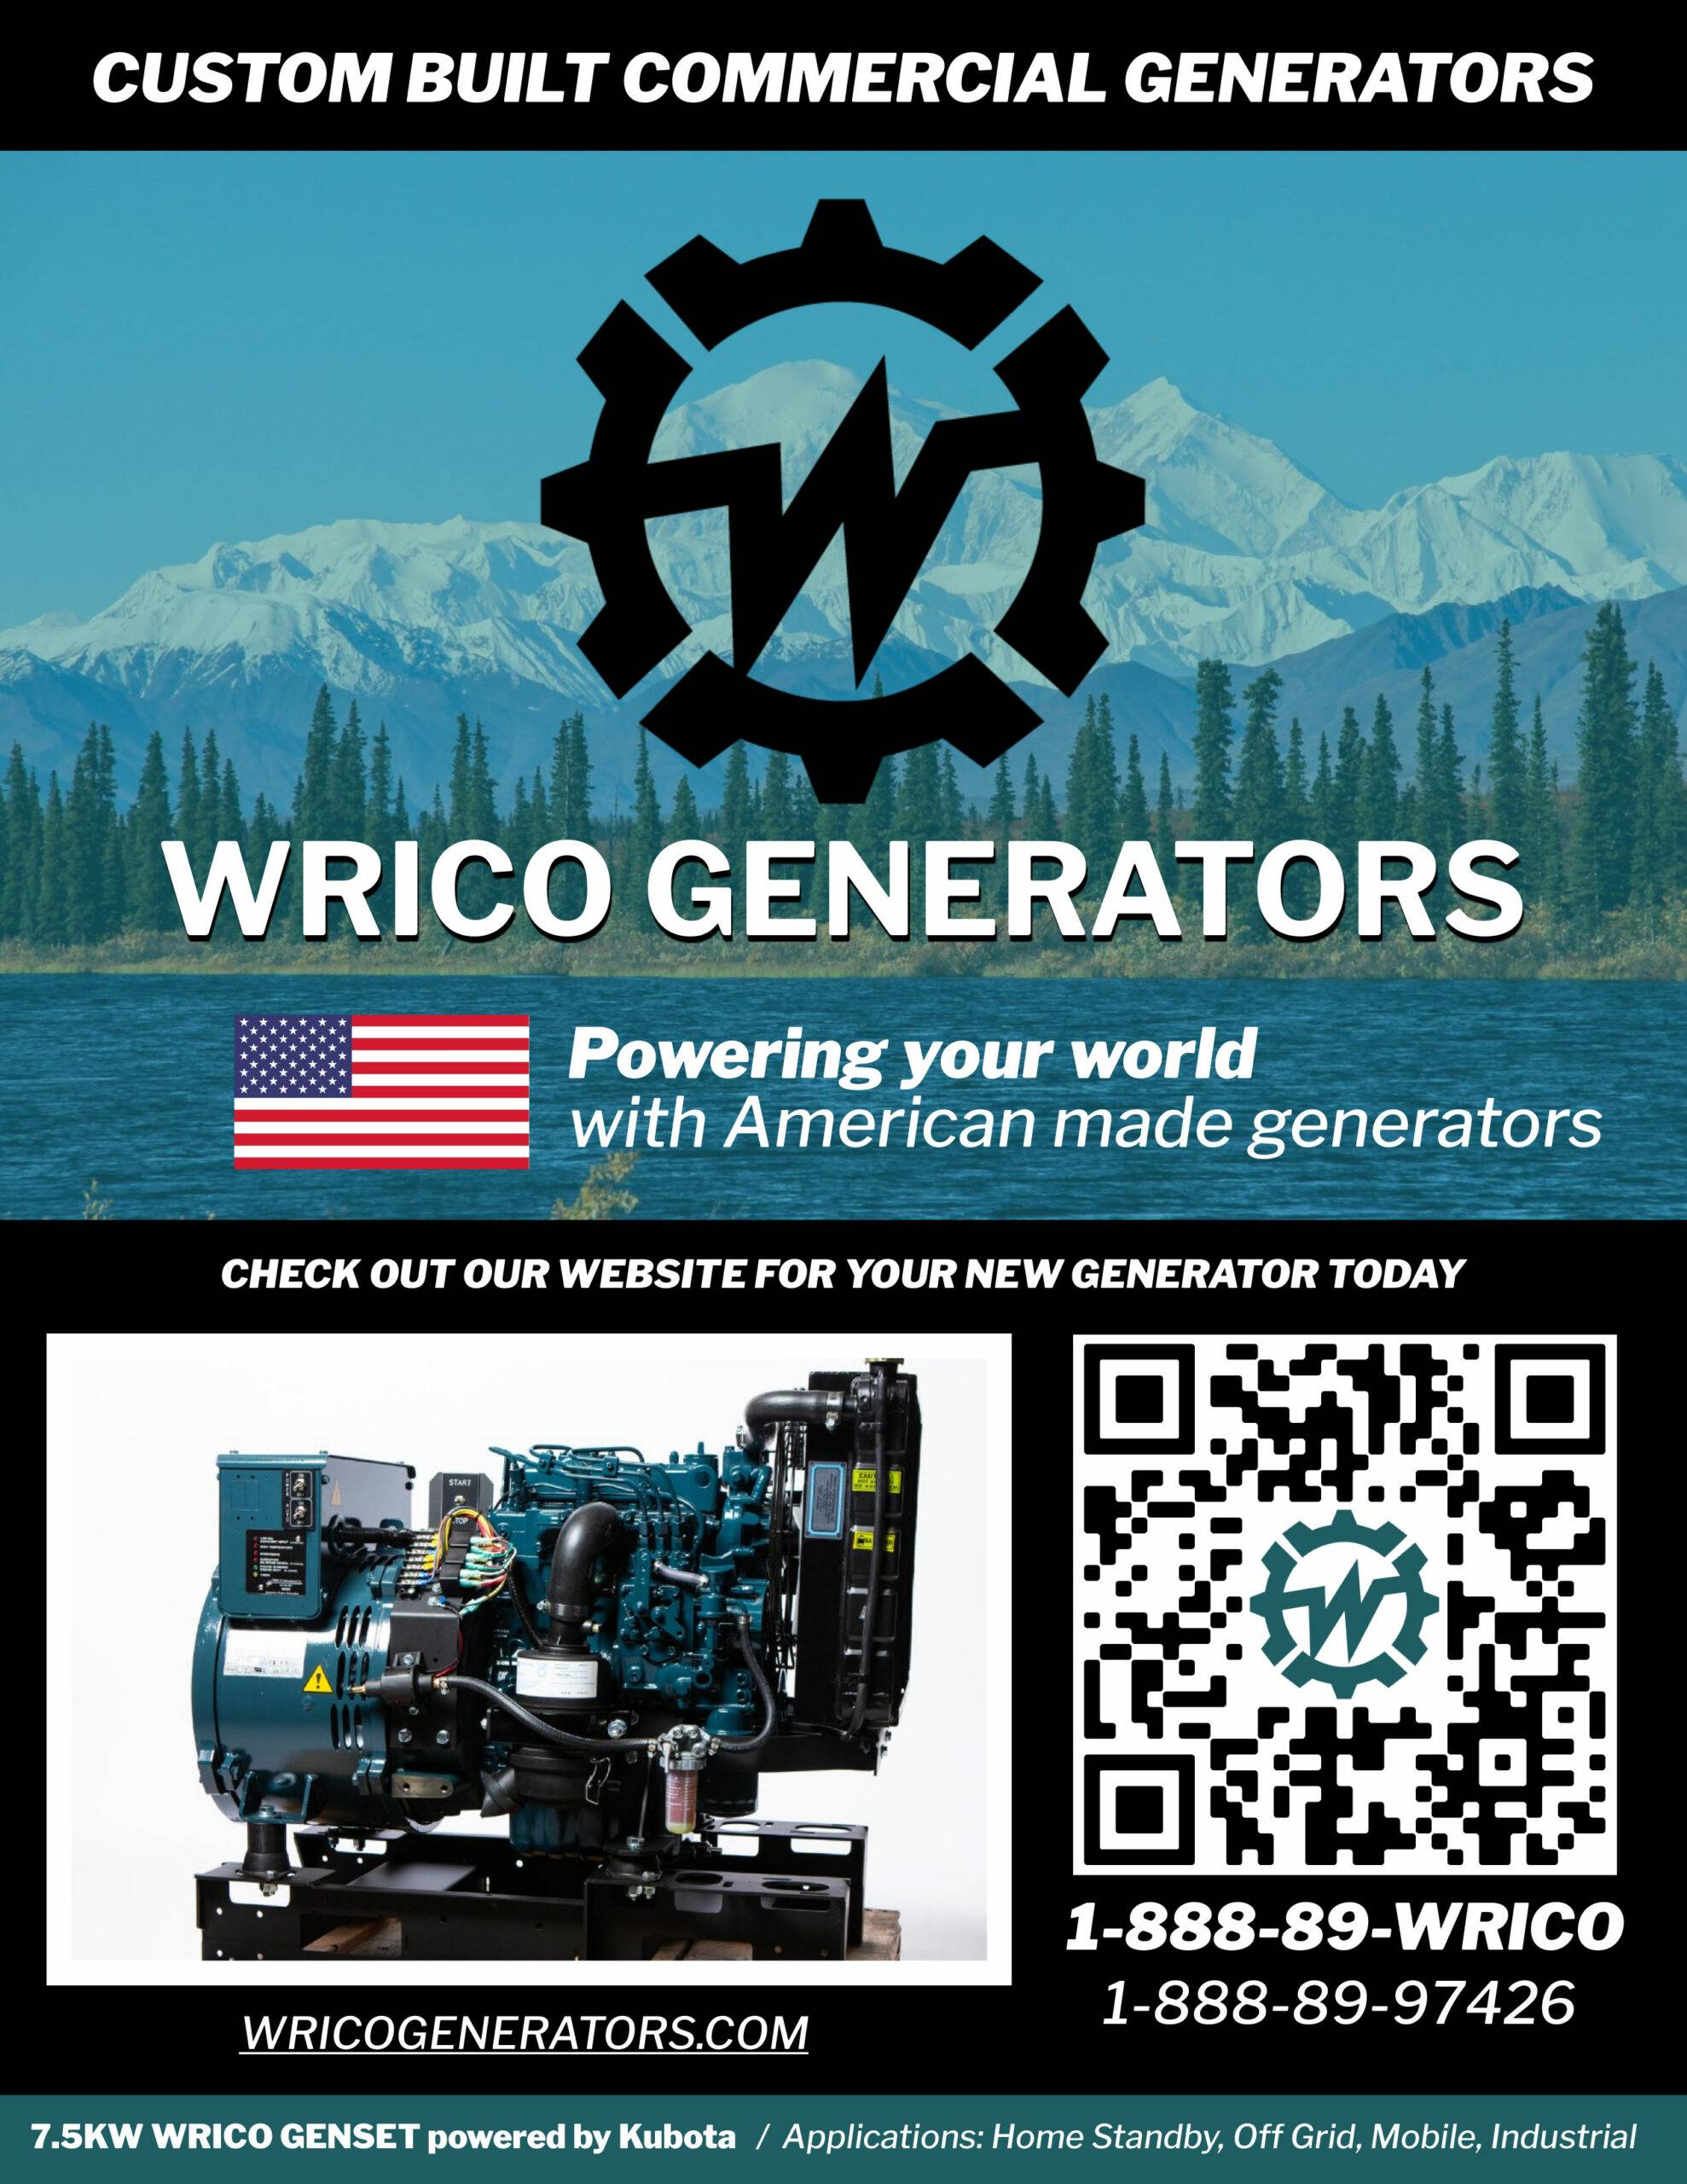 Wrico generators